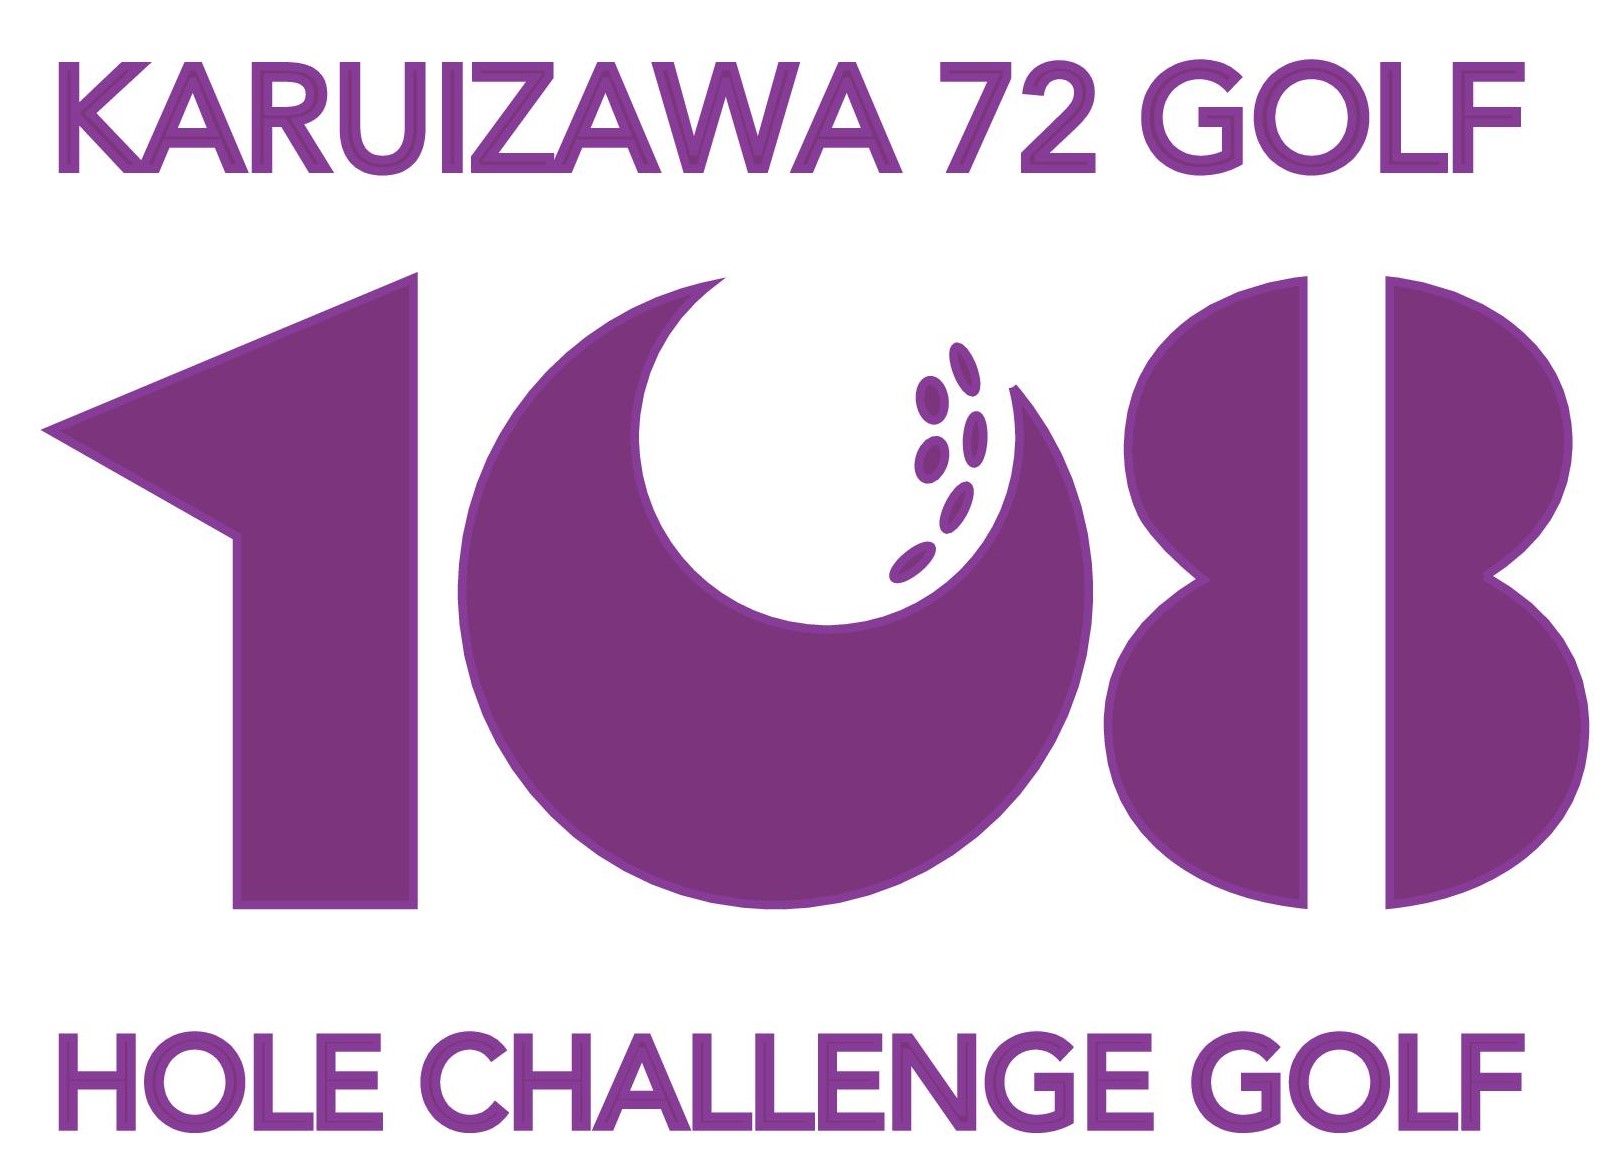 108Hkaruizawa logo